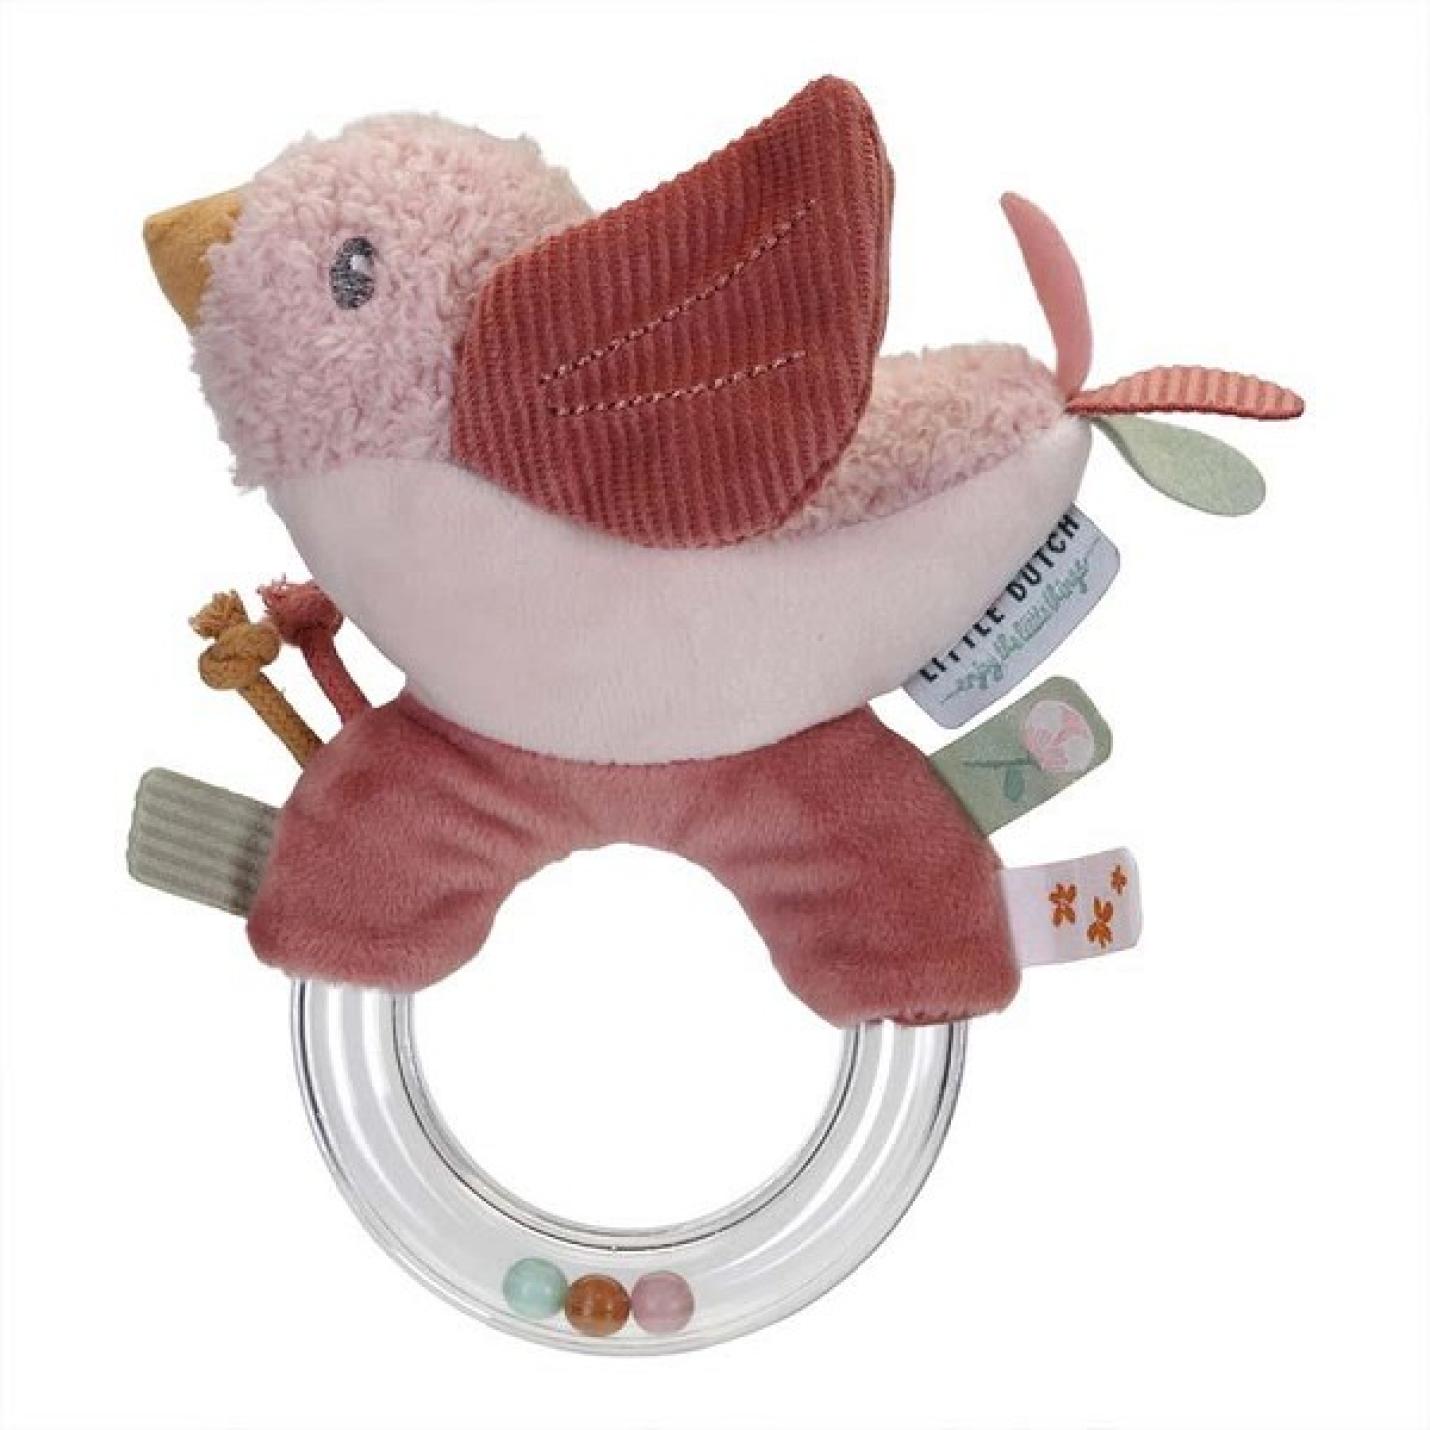 Ringrammelaar vogel met plastic ring met 3 kralen erin en een roze vogel met oranje zit aan de ring